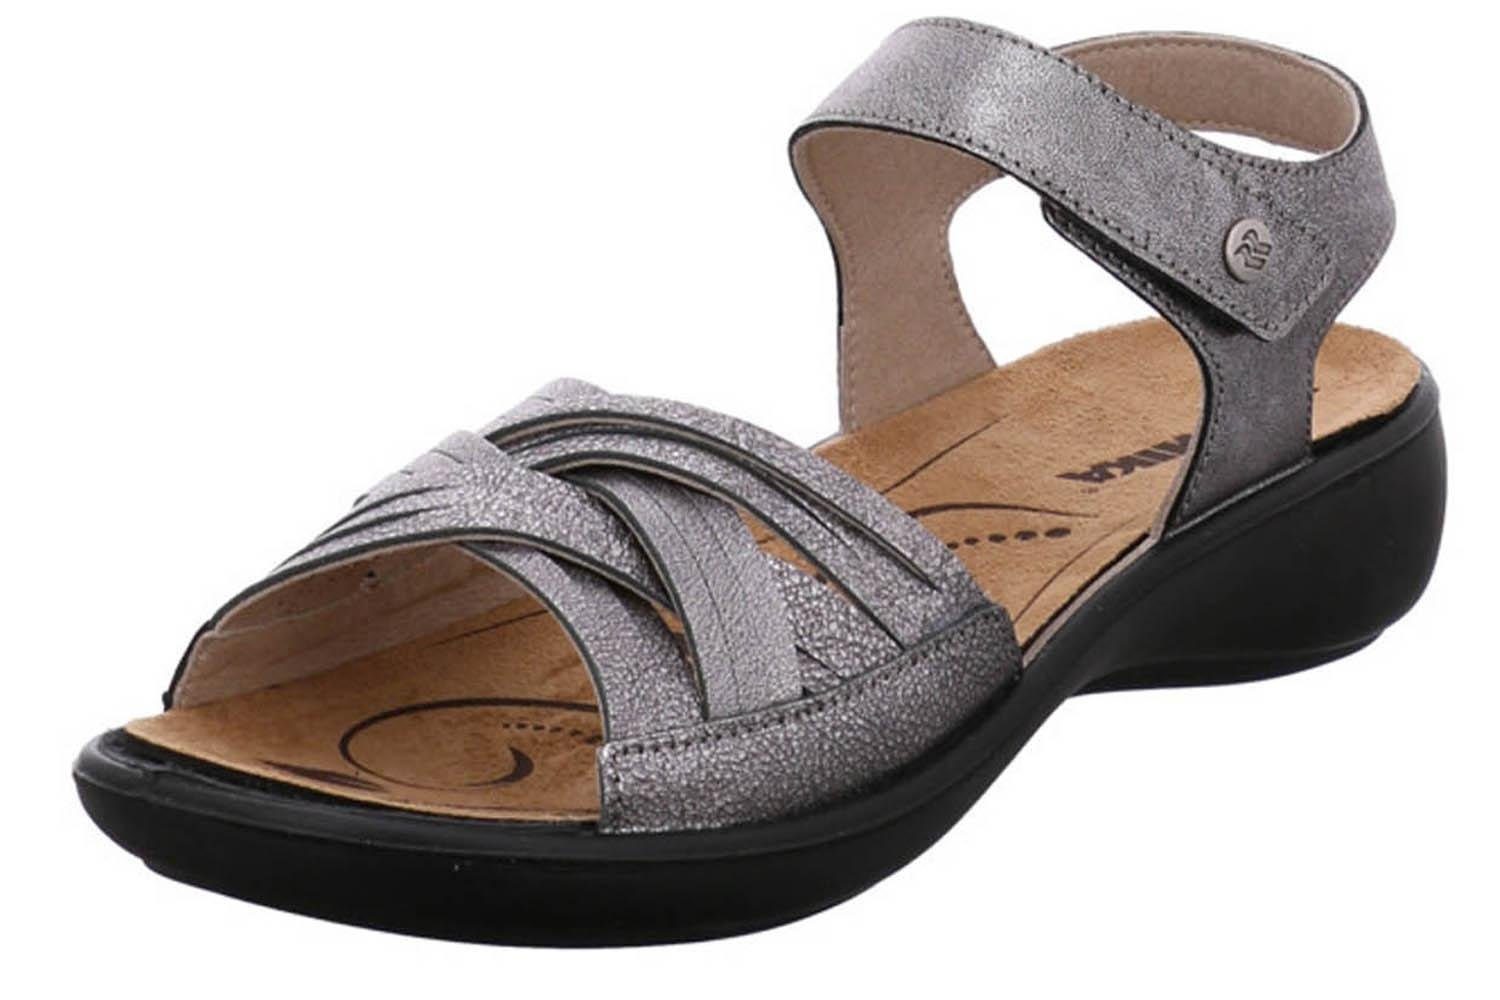 Romika »16085 49 700« Sandale online kaufen | OTTO